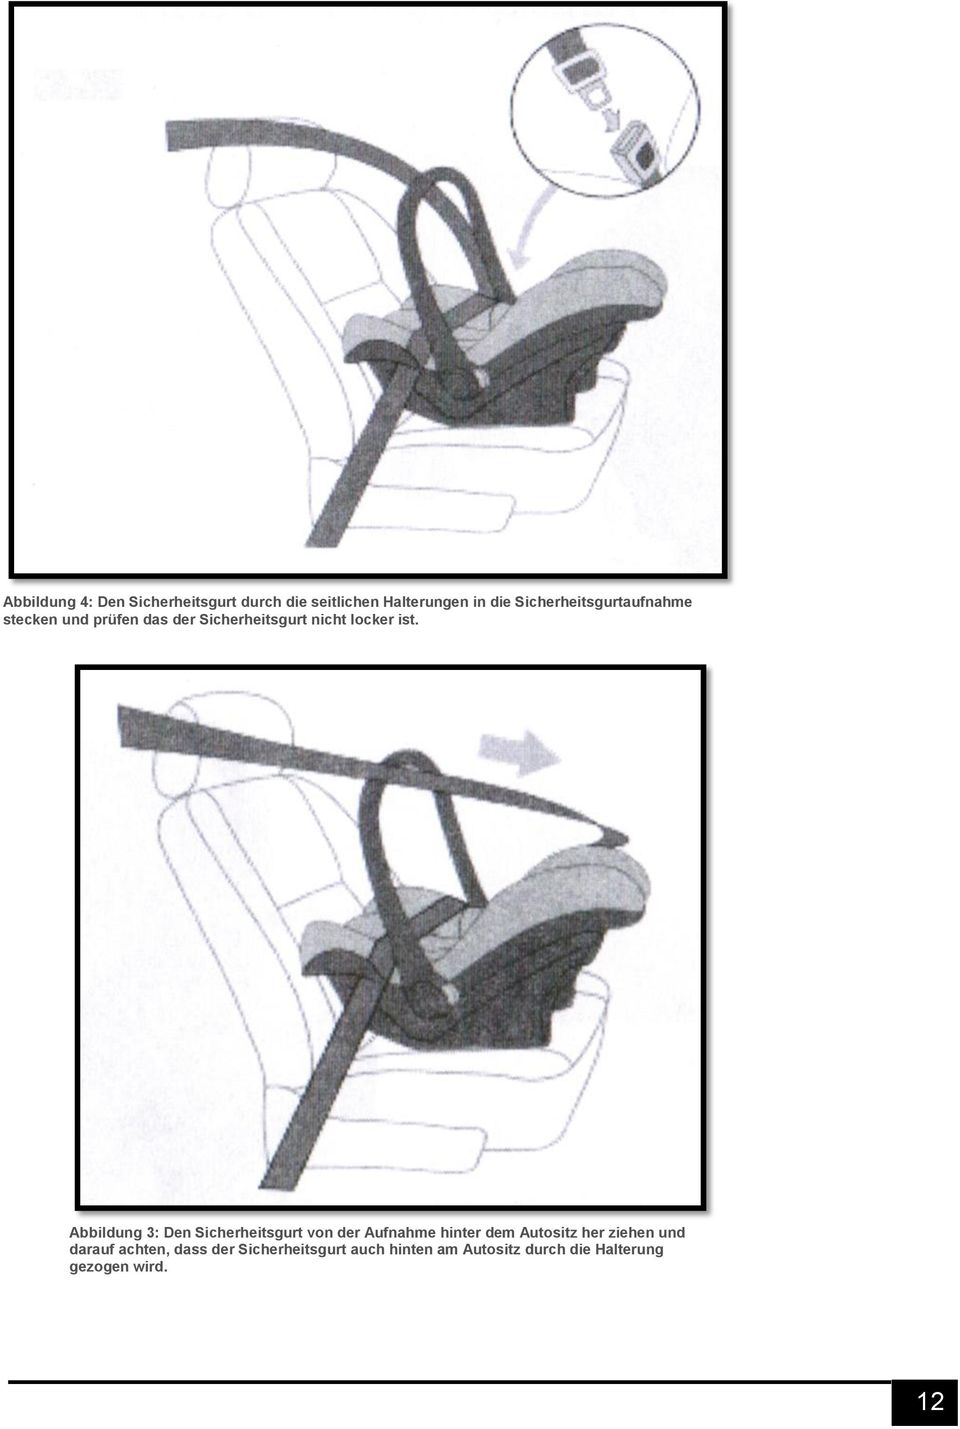 Abbildung 3: Den Sicherheitsgurt von der Aufnahme hinter dem Autositz her ziehen und